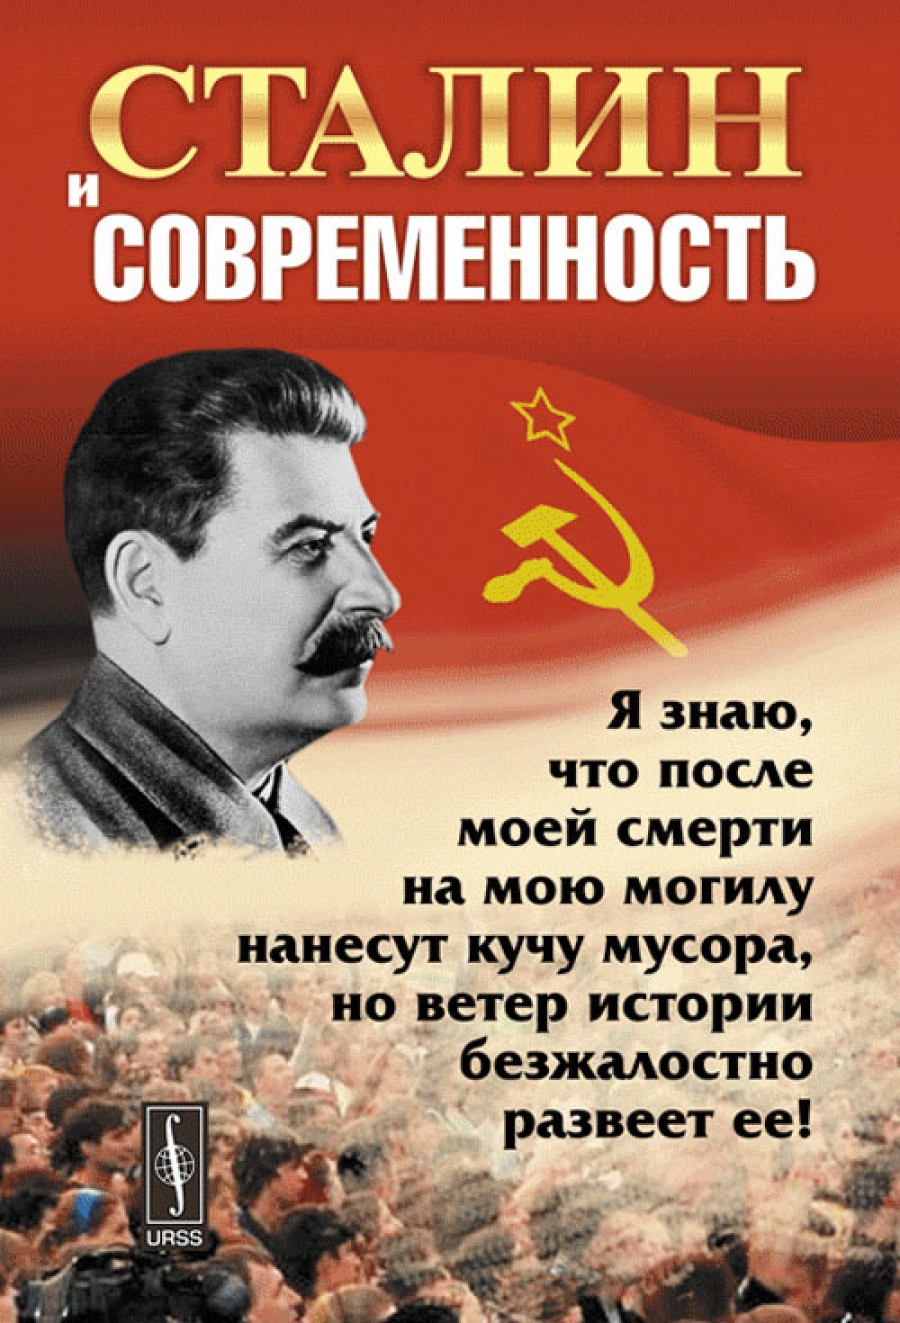 Сталинские книги купить. Сталин в современности. Сталин книга. Зиновьев про Сталина.